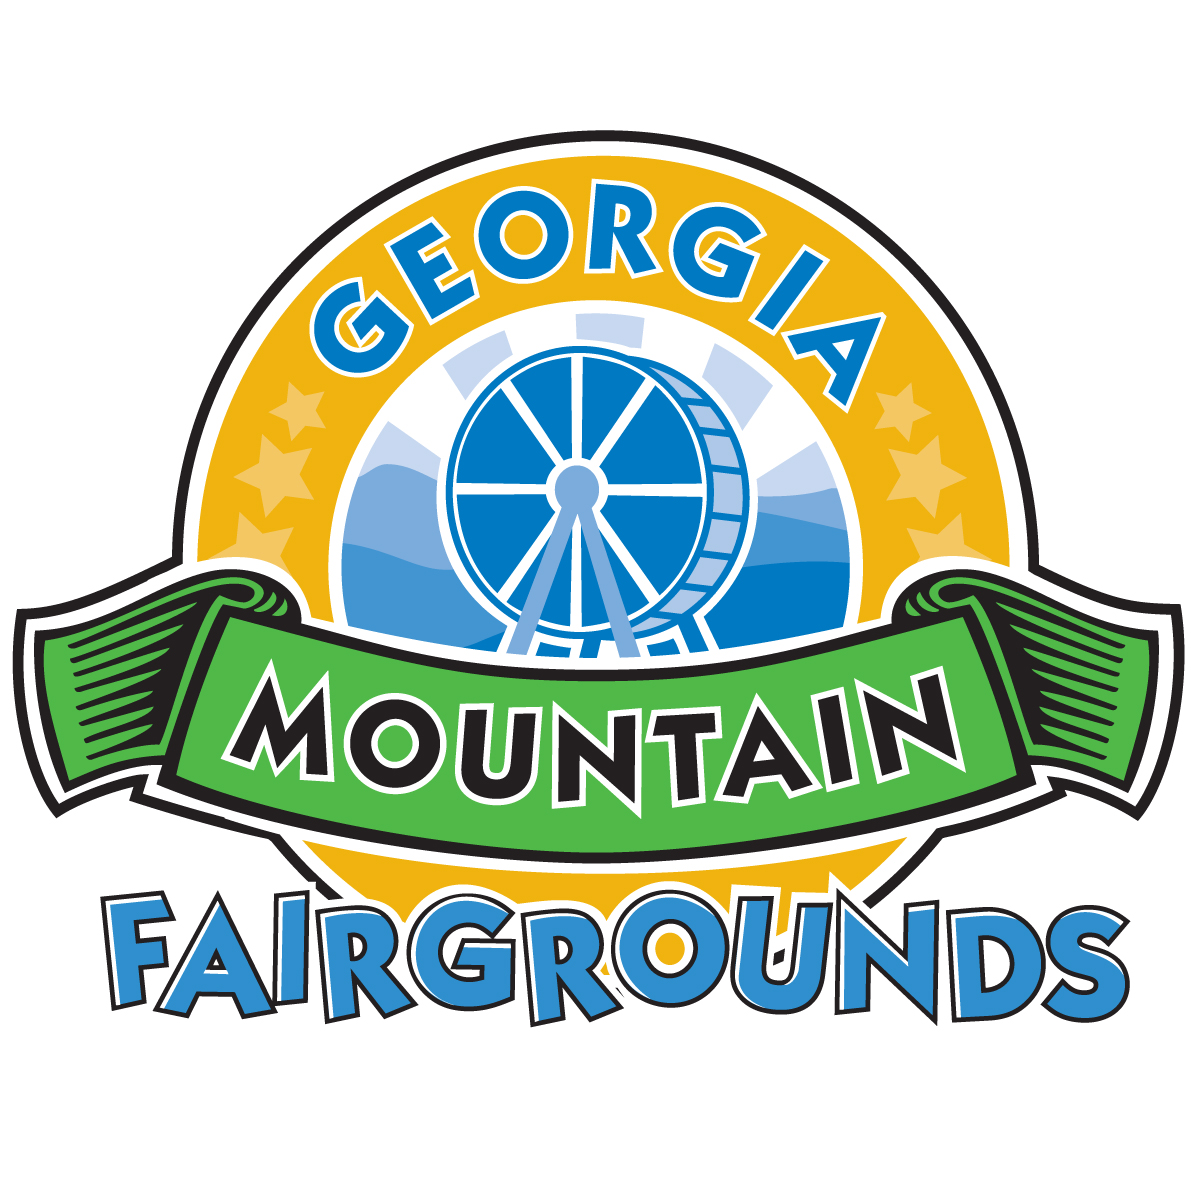 GeorgiaMountainFairgrounds_RGB.jpg